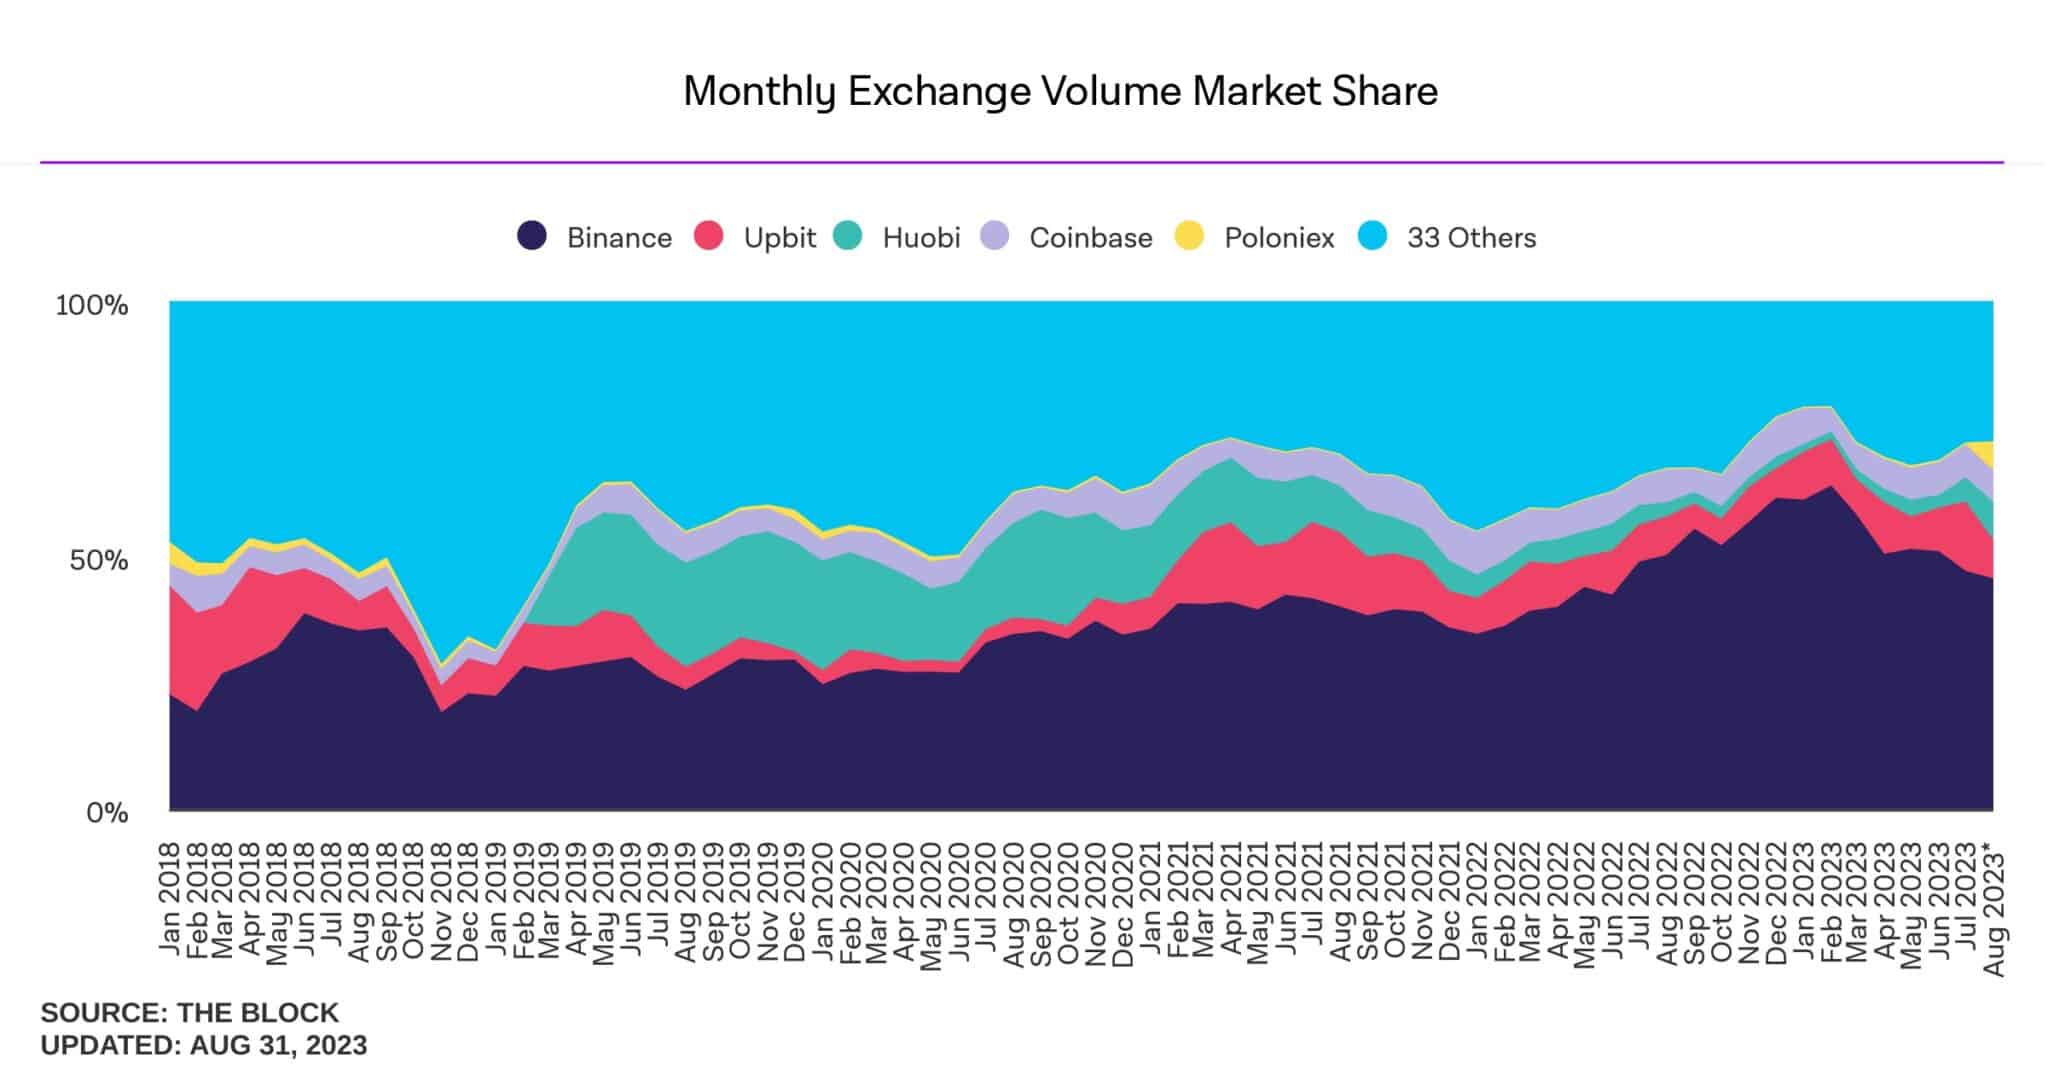 Cuotas de mercado mensuales de las principales plataformas de intercambio de criptomonedas